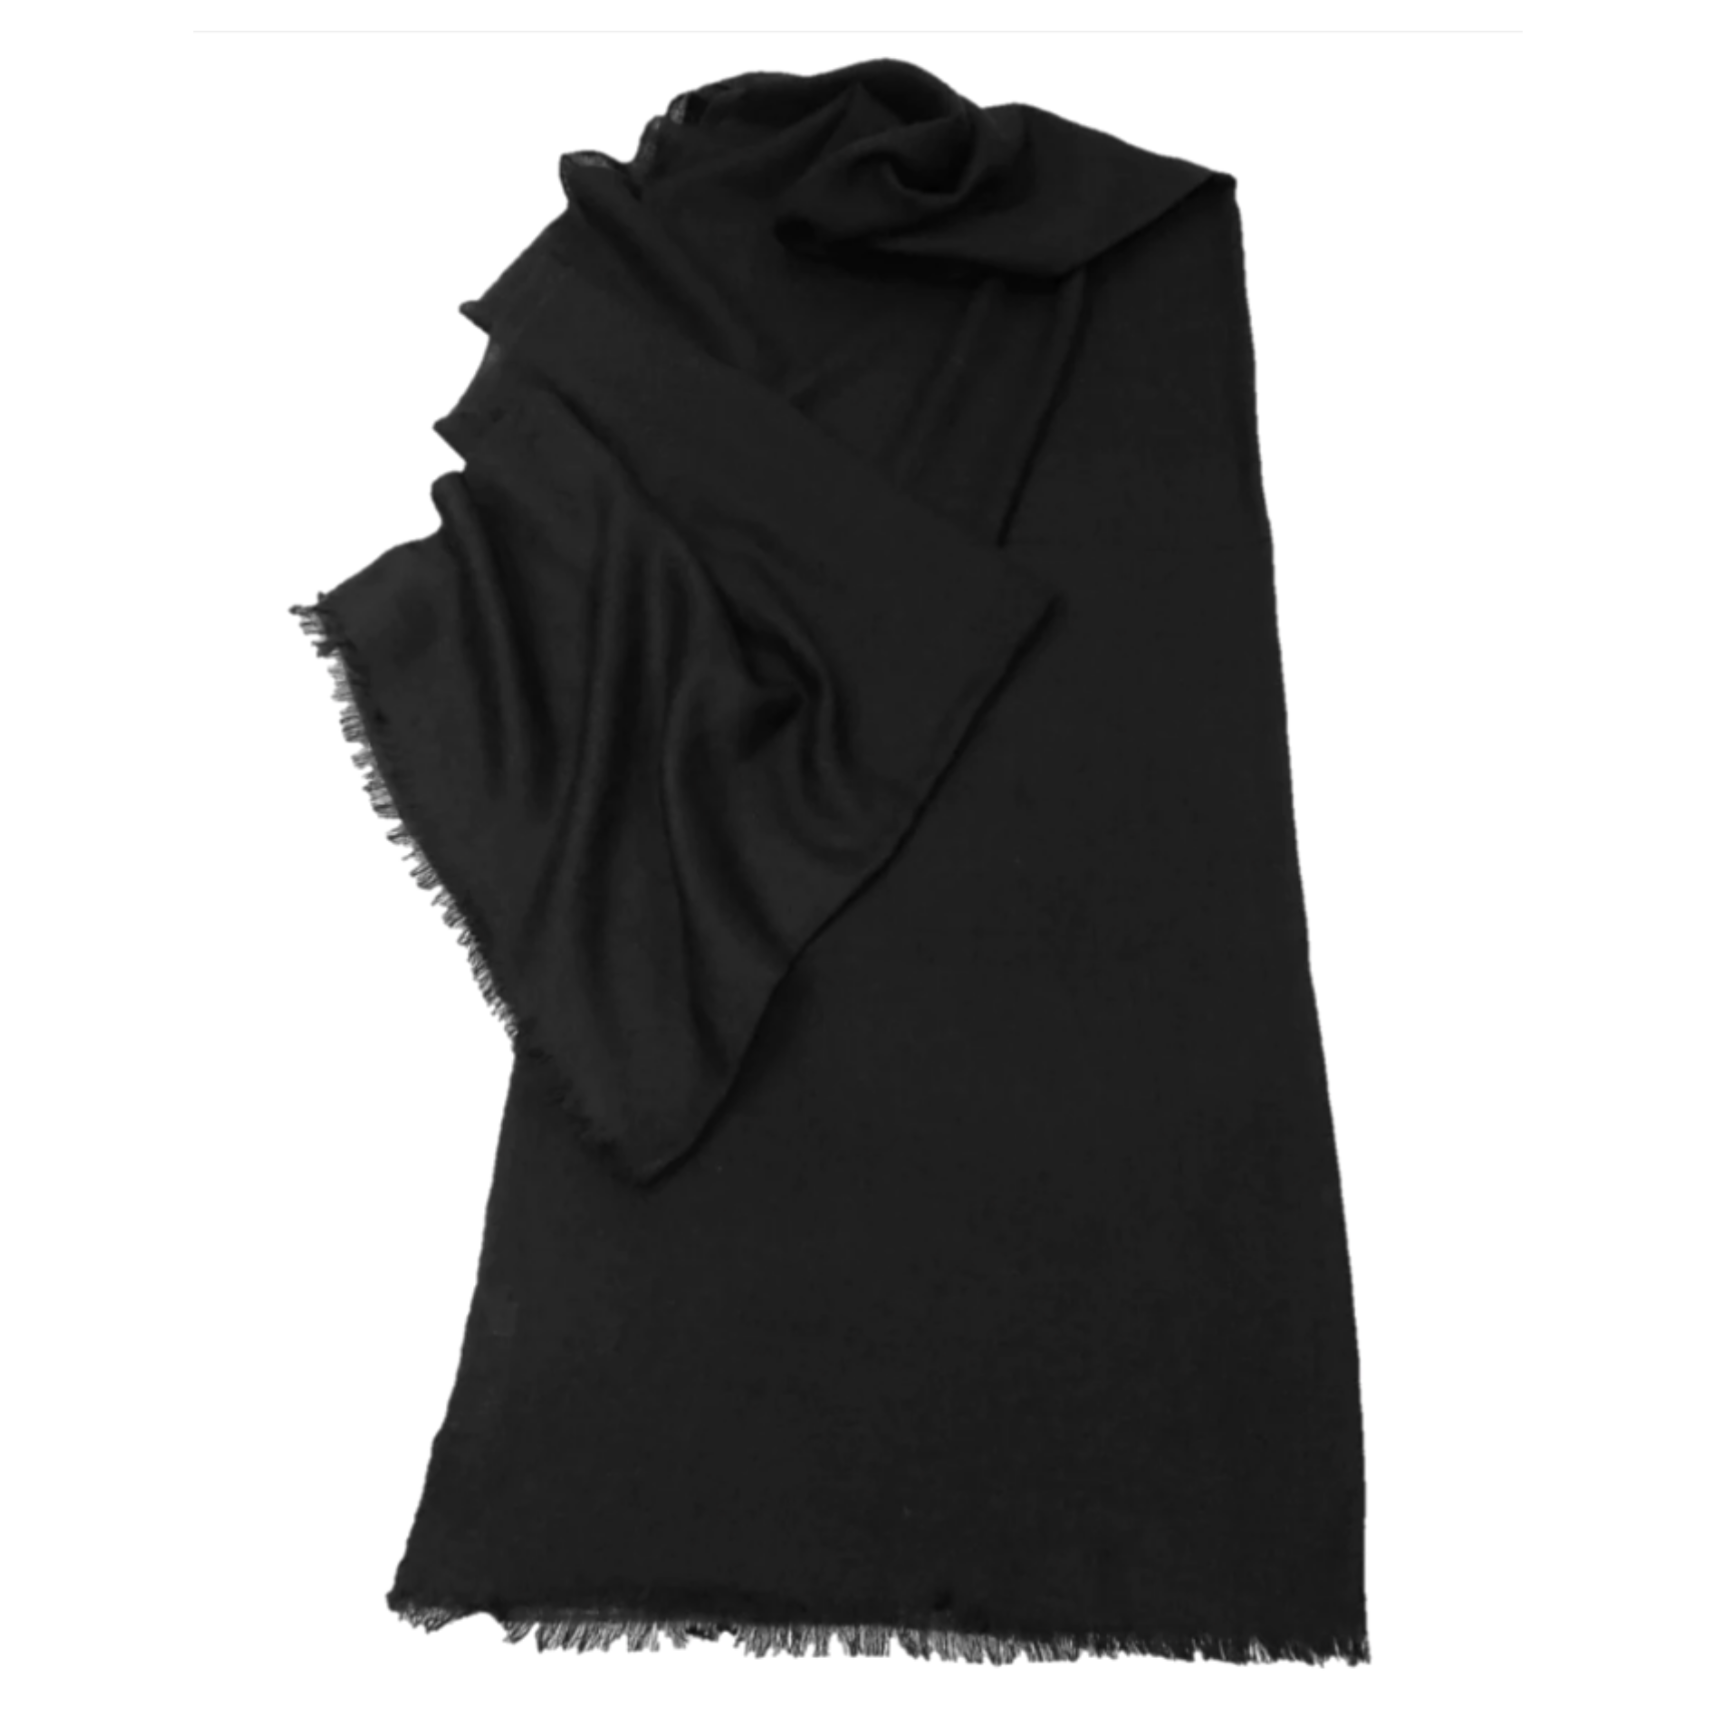 Black pashmina wool shawl